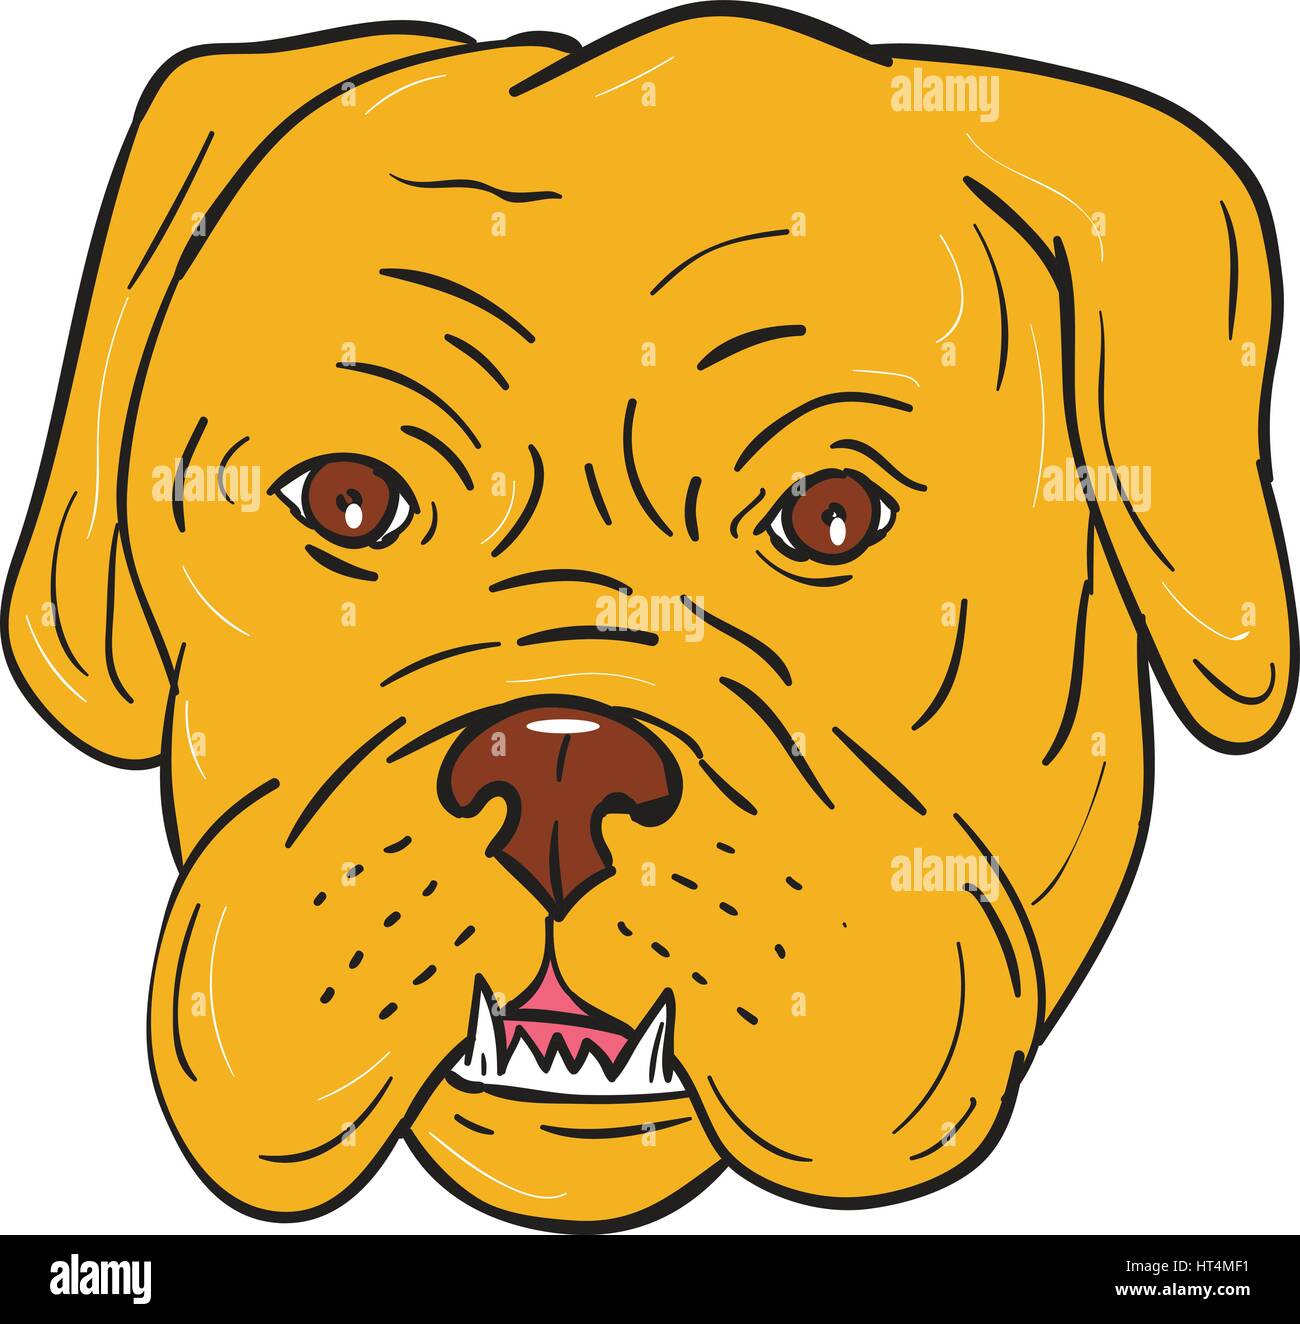 Illustrazione di un Dogue de Bordeaux Bordeaux Mastiff, Francese Mastiff o Bordeaux cane, un grande francese Mastiff razza uno del più antico cane Francese Illustrazione Vettoriale